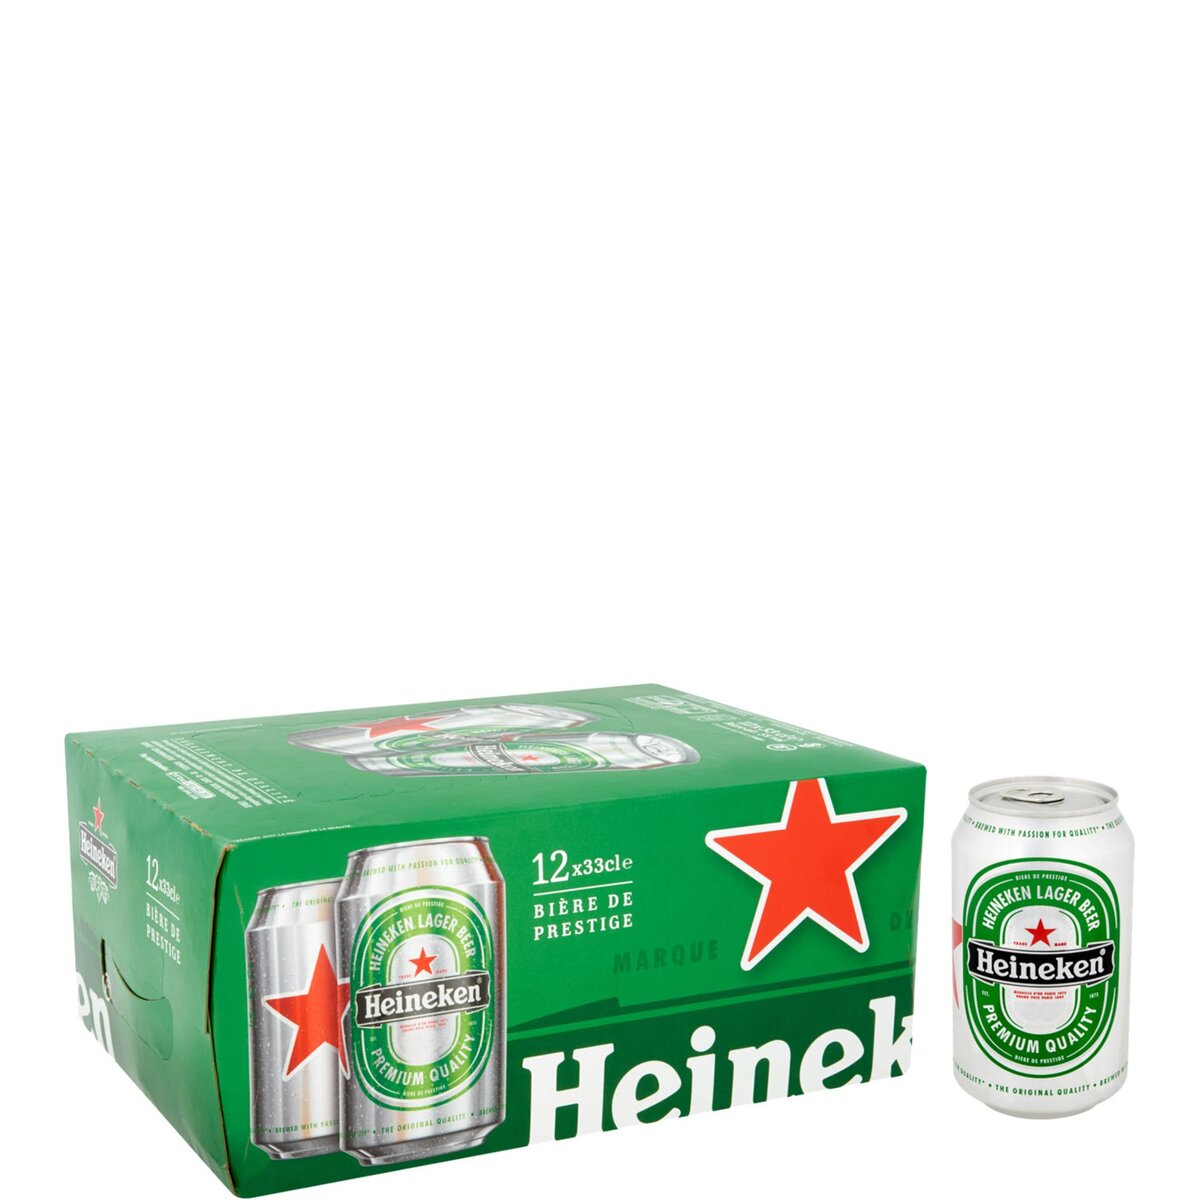 HEINEKEN Heineken bière blonde 5° boîte 12x33cl